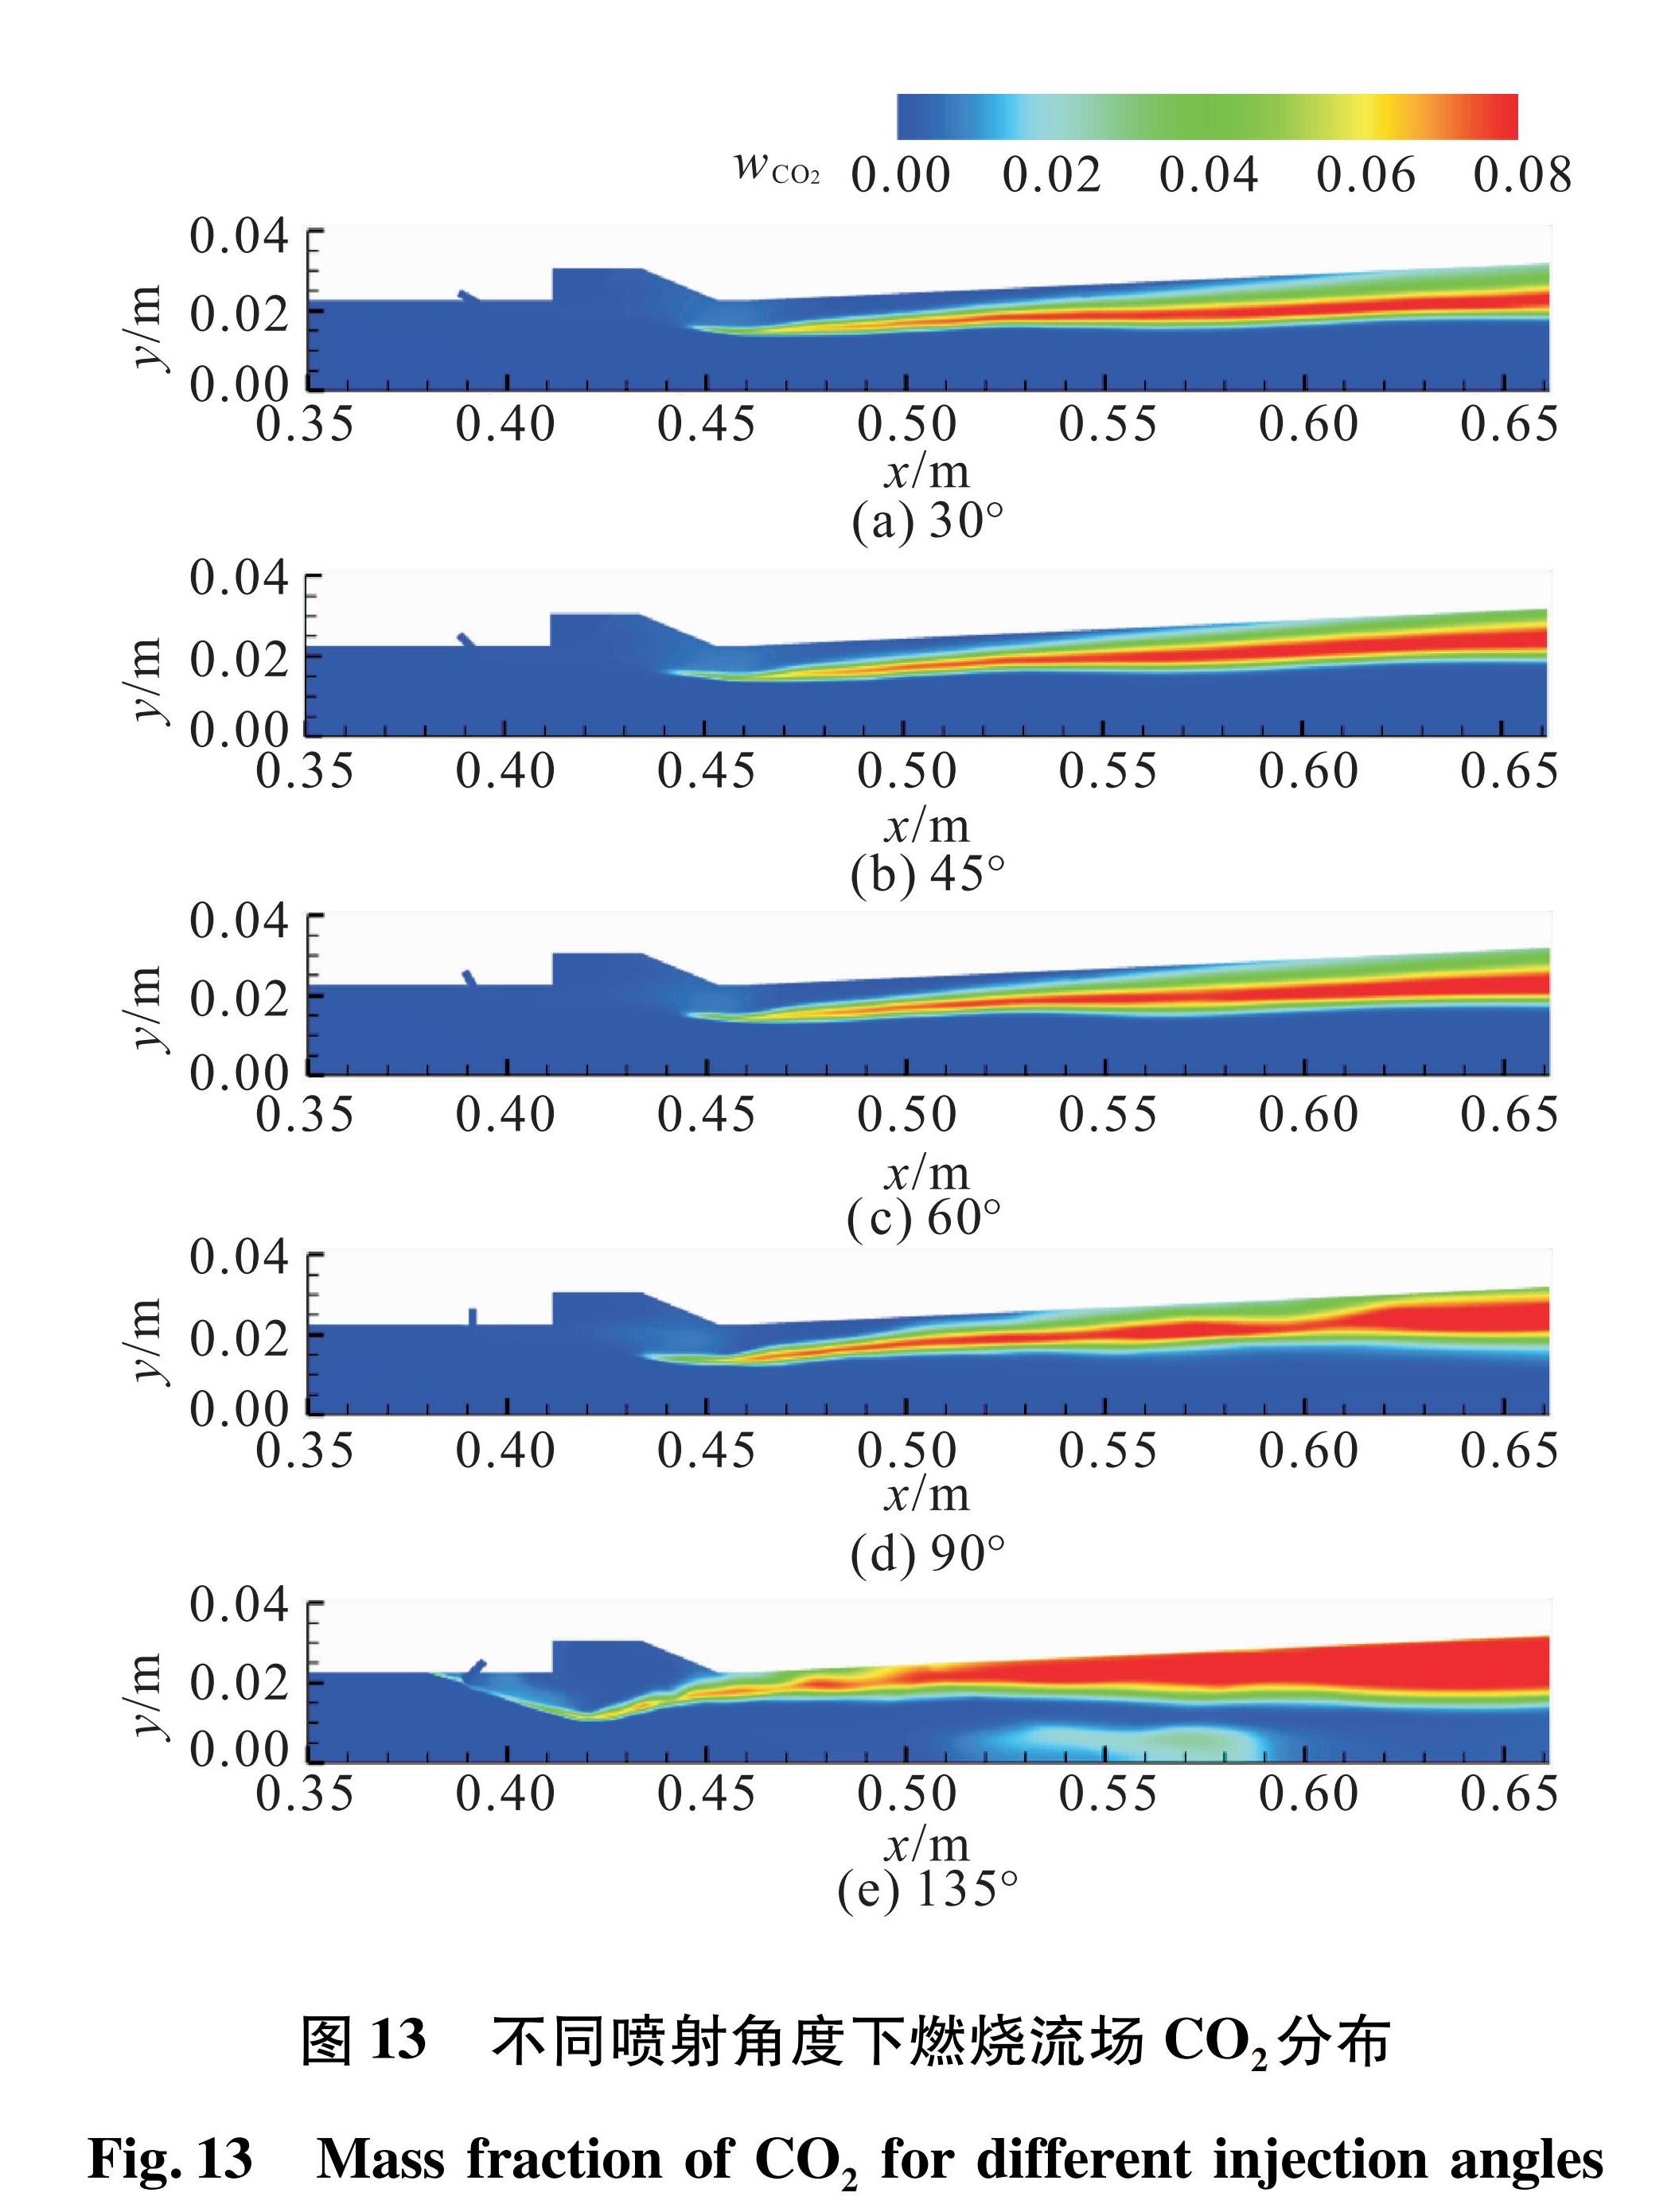 图 13 不同喷射角度下燃烧流场CO2分布<br/>Fig.13 Mass fraction of CO2 for different injection angles 